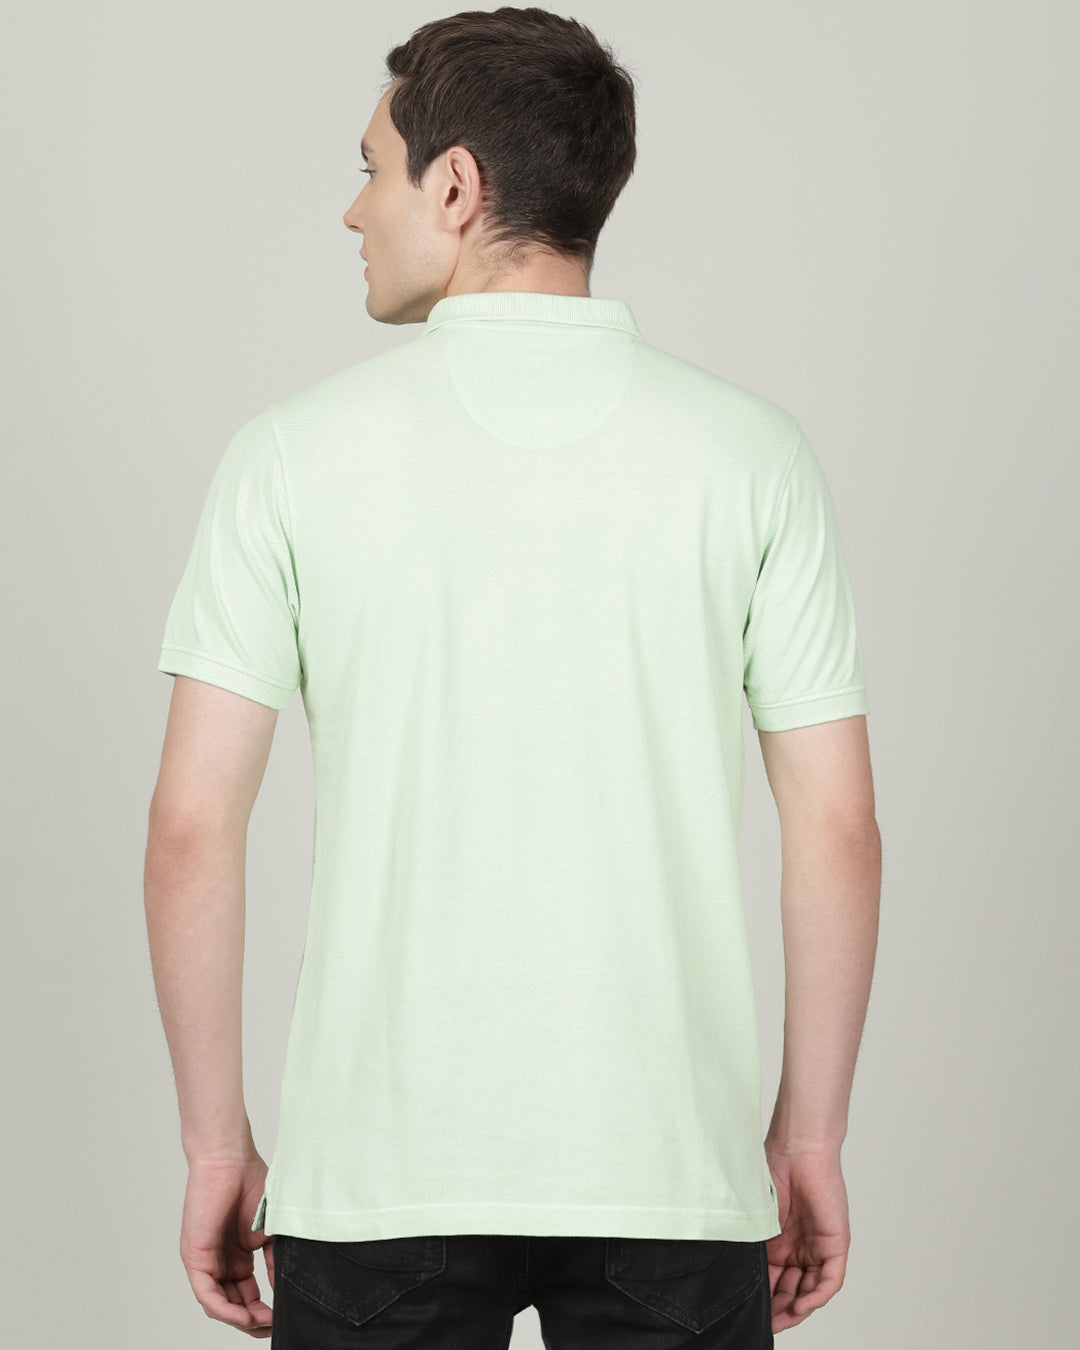 Crocodile Green Half Sleeve T-shirt